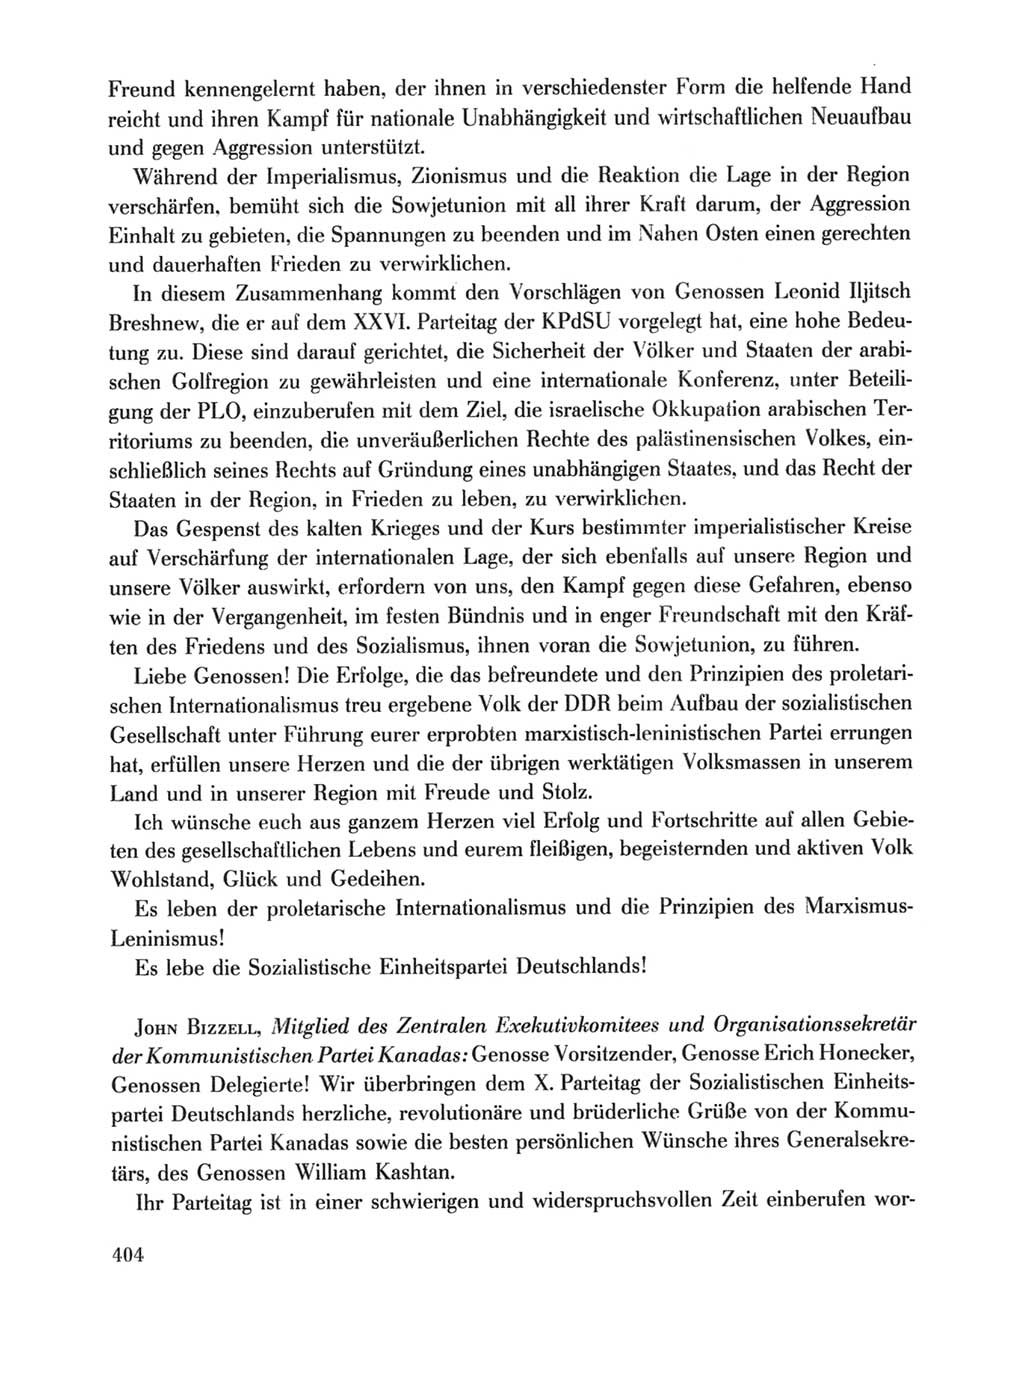 Protokoll der Verhandlungen des Ⅹ. Parteitages der Sozialistischen Einheitspartei Deutschlands (SED) [Deutsche Demokratische Republik (DDR)] 1981, Band 1, Seite 404 (Prot. Verh. Ⅹ. PT SED DDR 1981, Bd. 1, S. 404)